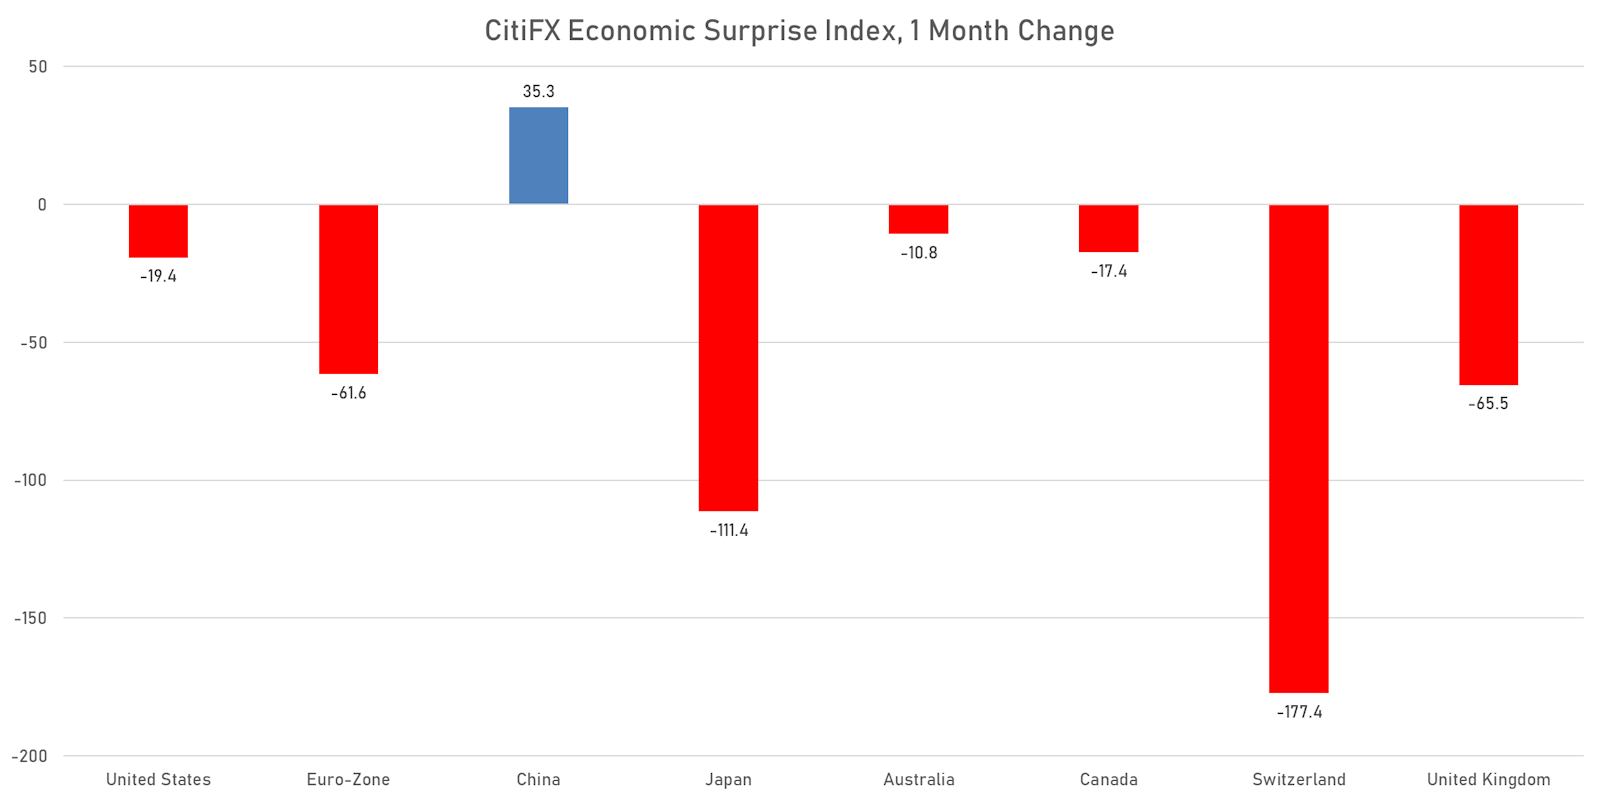 CitiFX Economic Surprise Indices | Sources: ϕpost, Refinitiv data